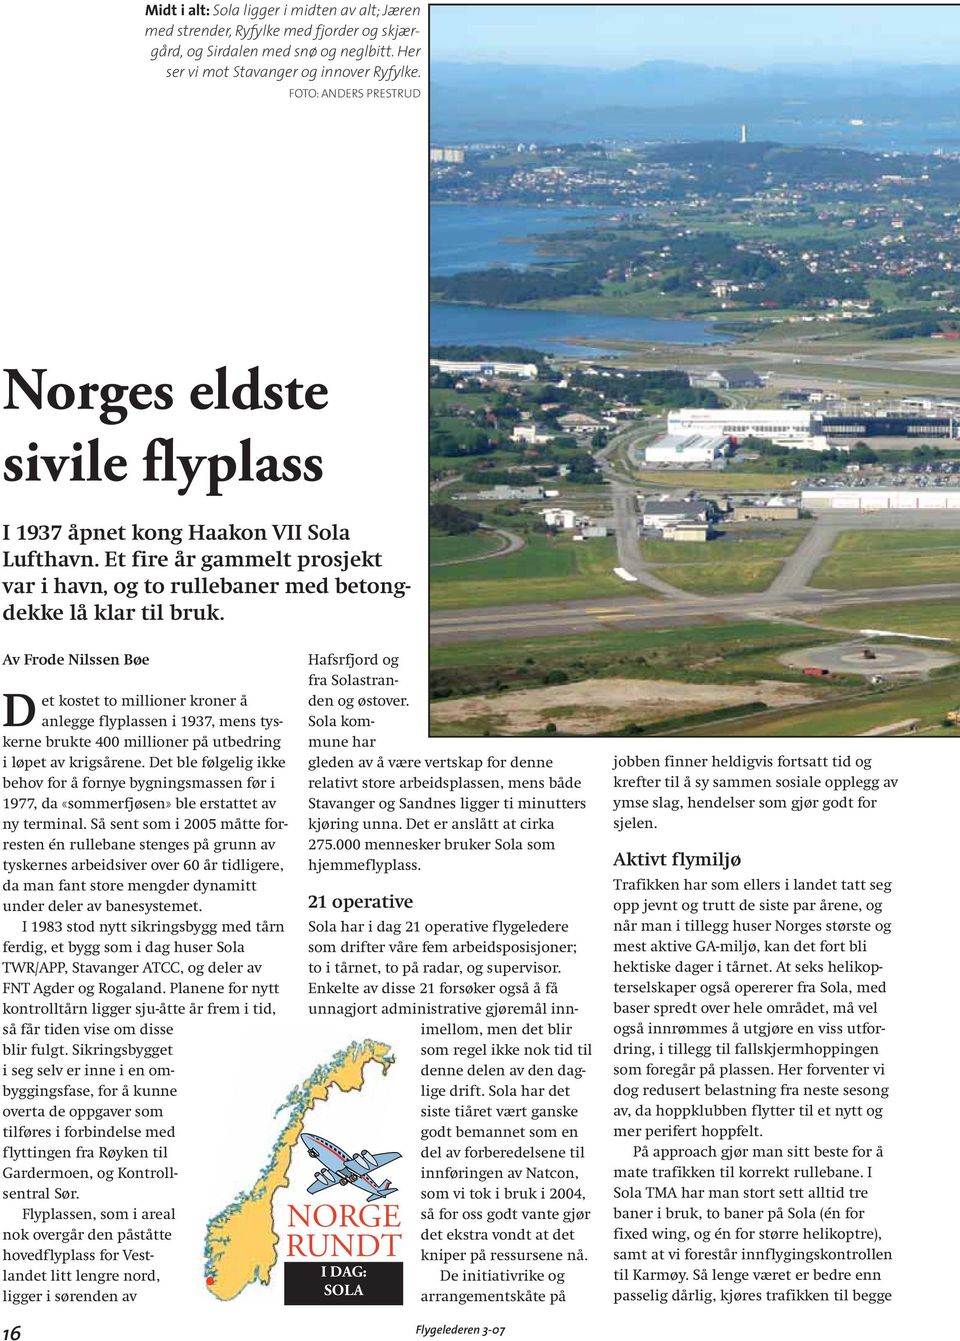 Av Frode Nilssen Bøe Det kostet to millioner kroner å anlegge flyplassen i 1937, mens tyskerne brukte 400 millioner på utbedring i løpet av krigsårene.